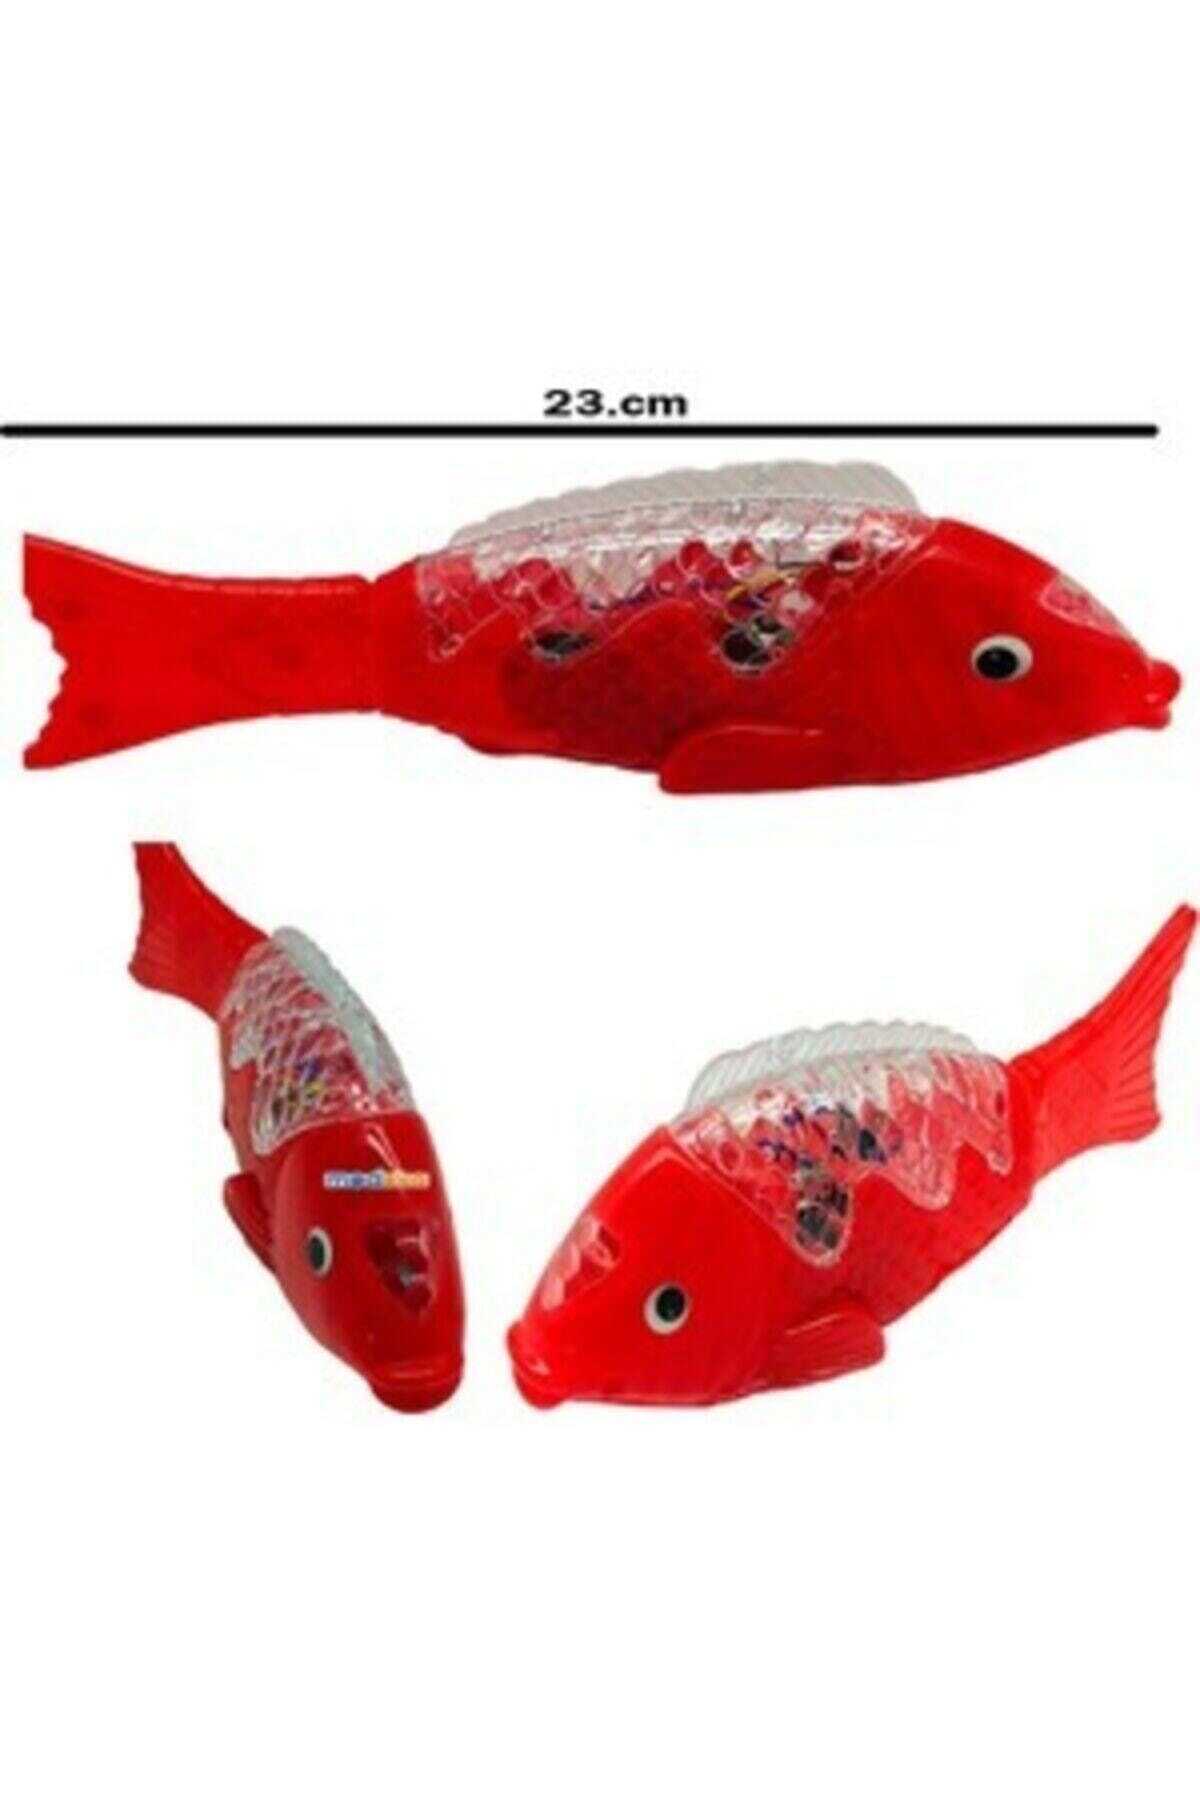 ماهی قرمز 23 سانتی متری موزیکال ترکی چراغ دار 